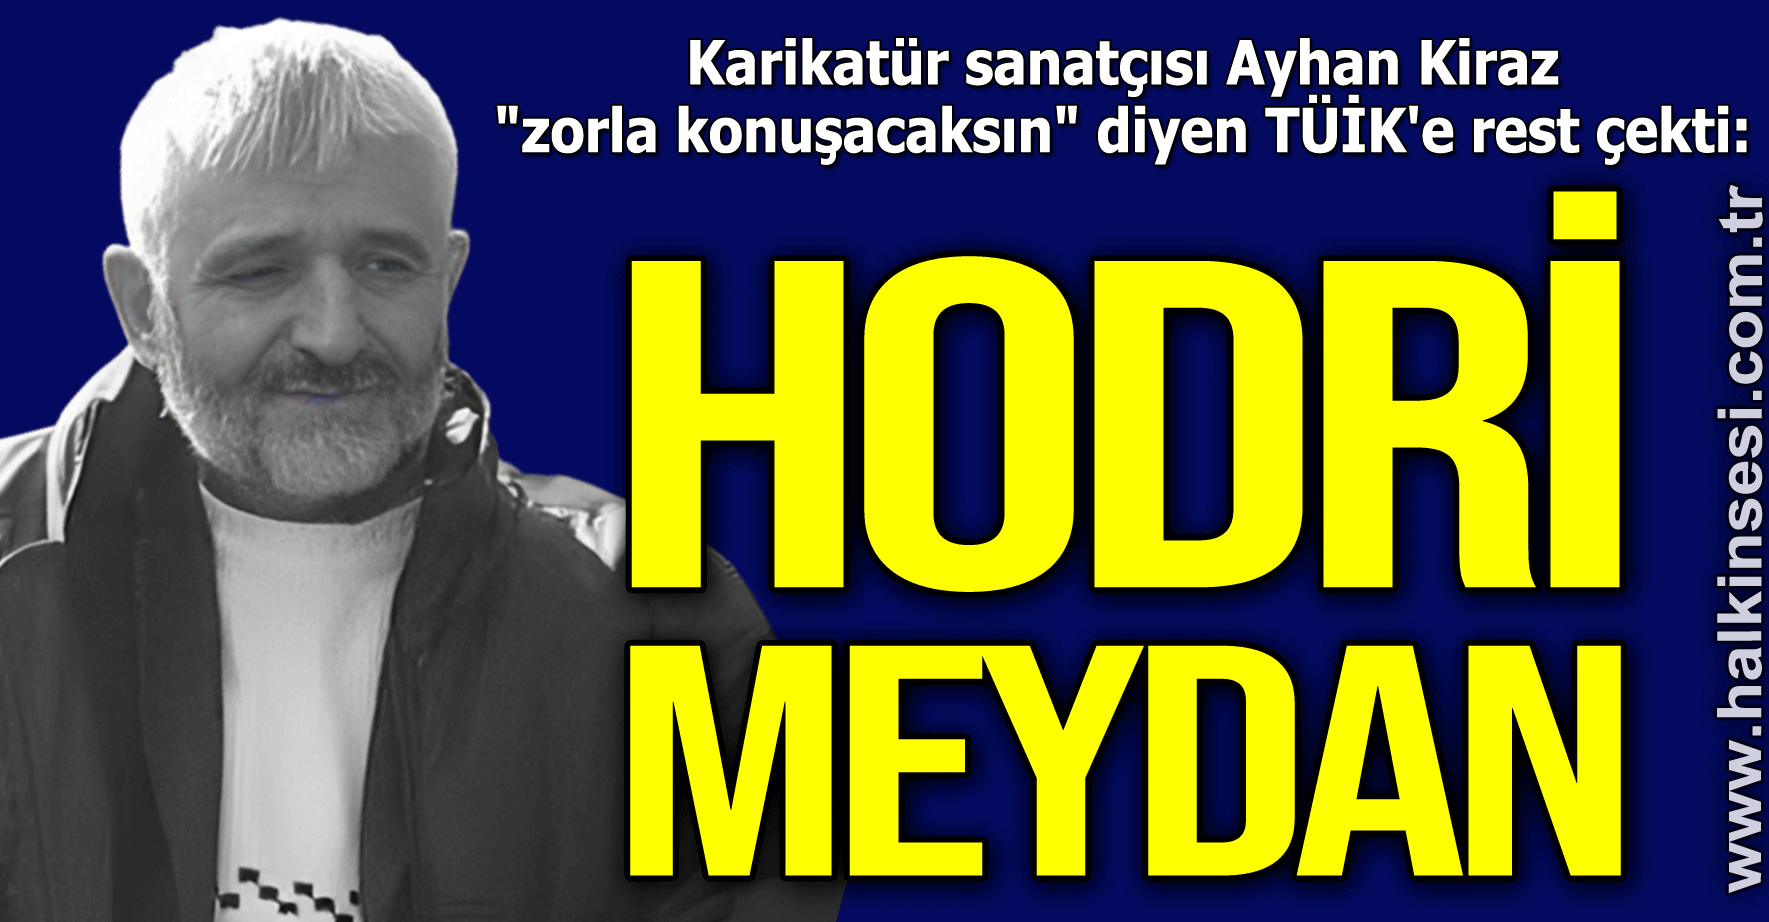 "HODRİ MEYDAN"